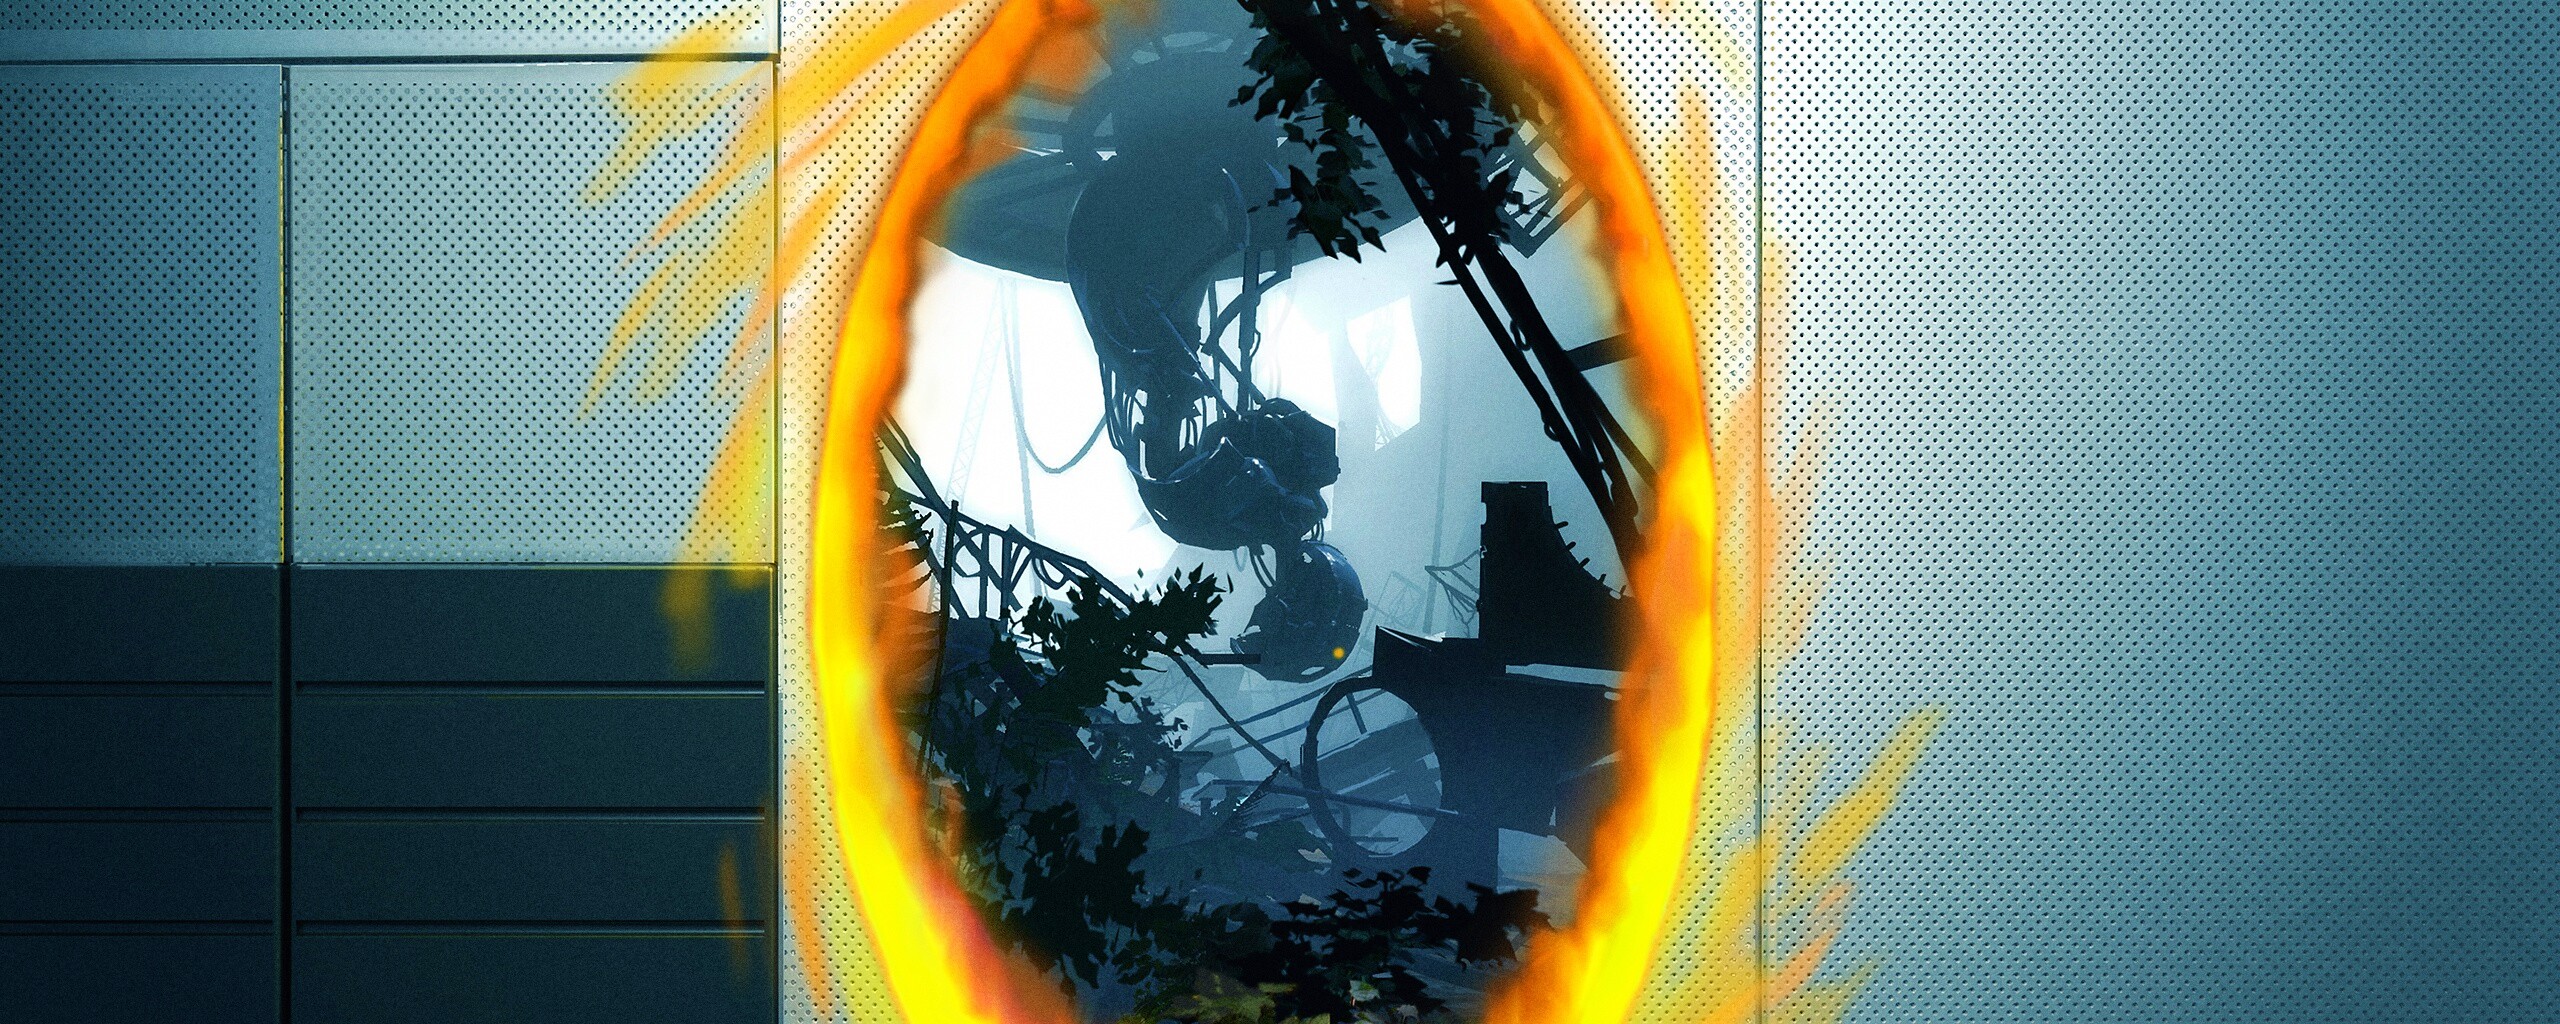 Portal 2 split screen на пк фото 10